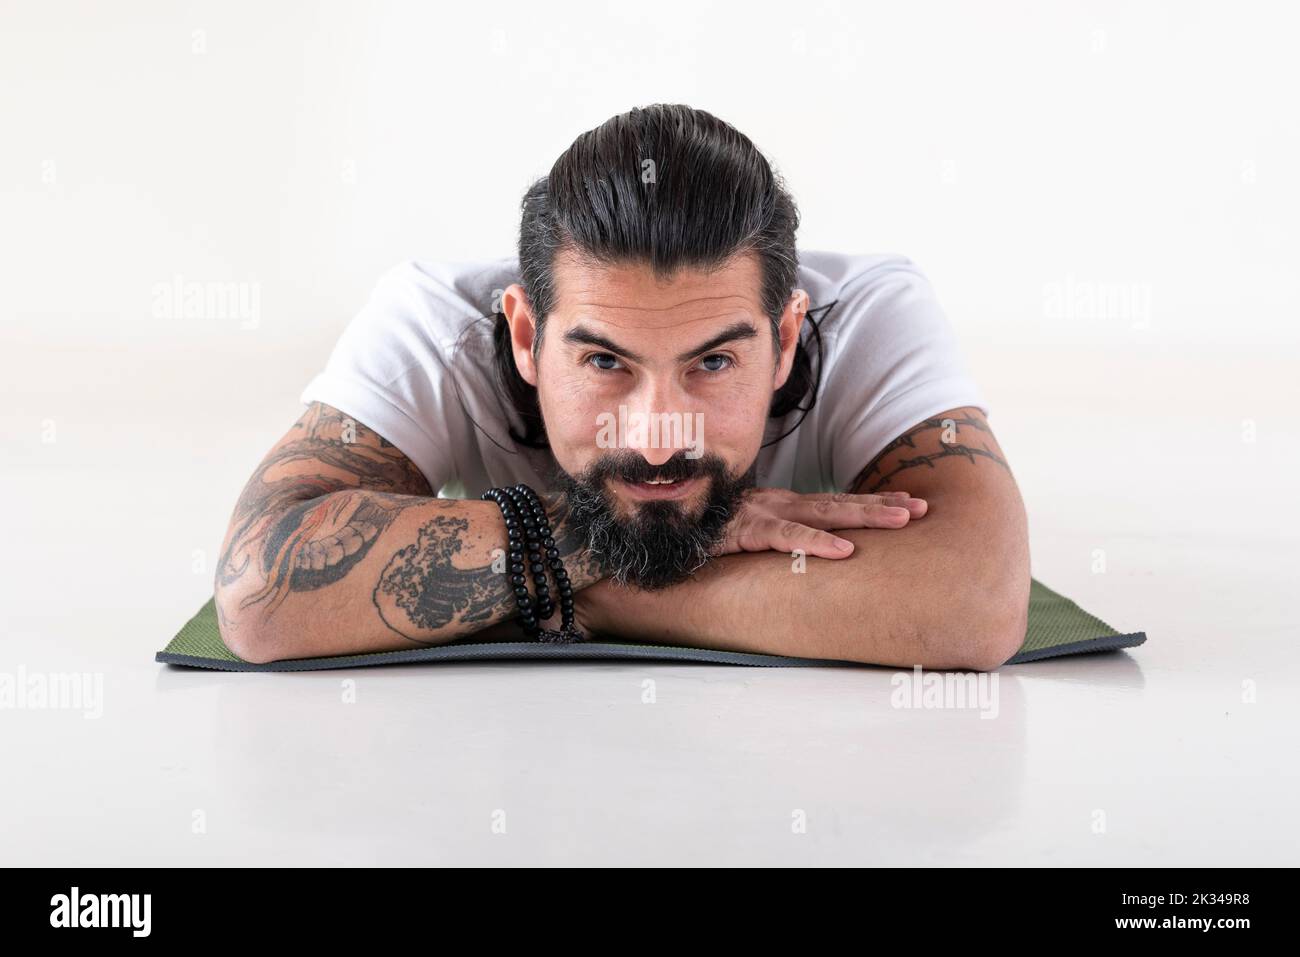 Portrait d'un homme vêtu de vêtements blancs de yoga allongé sur un tapis tout en regardant l'appareil photo sur fond blanc. Prise de vue en studio Banque D'Images